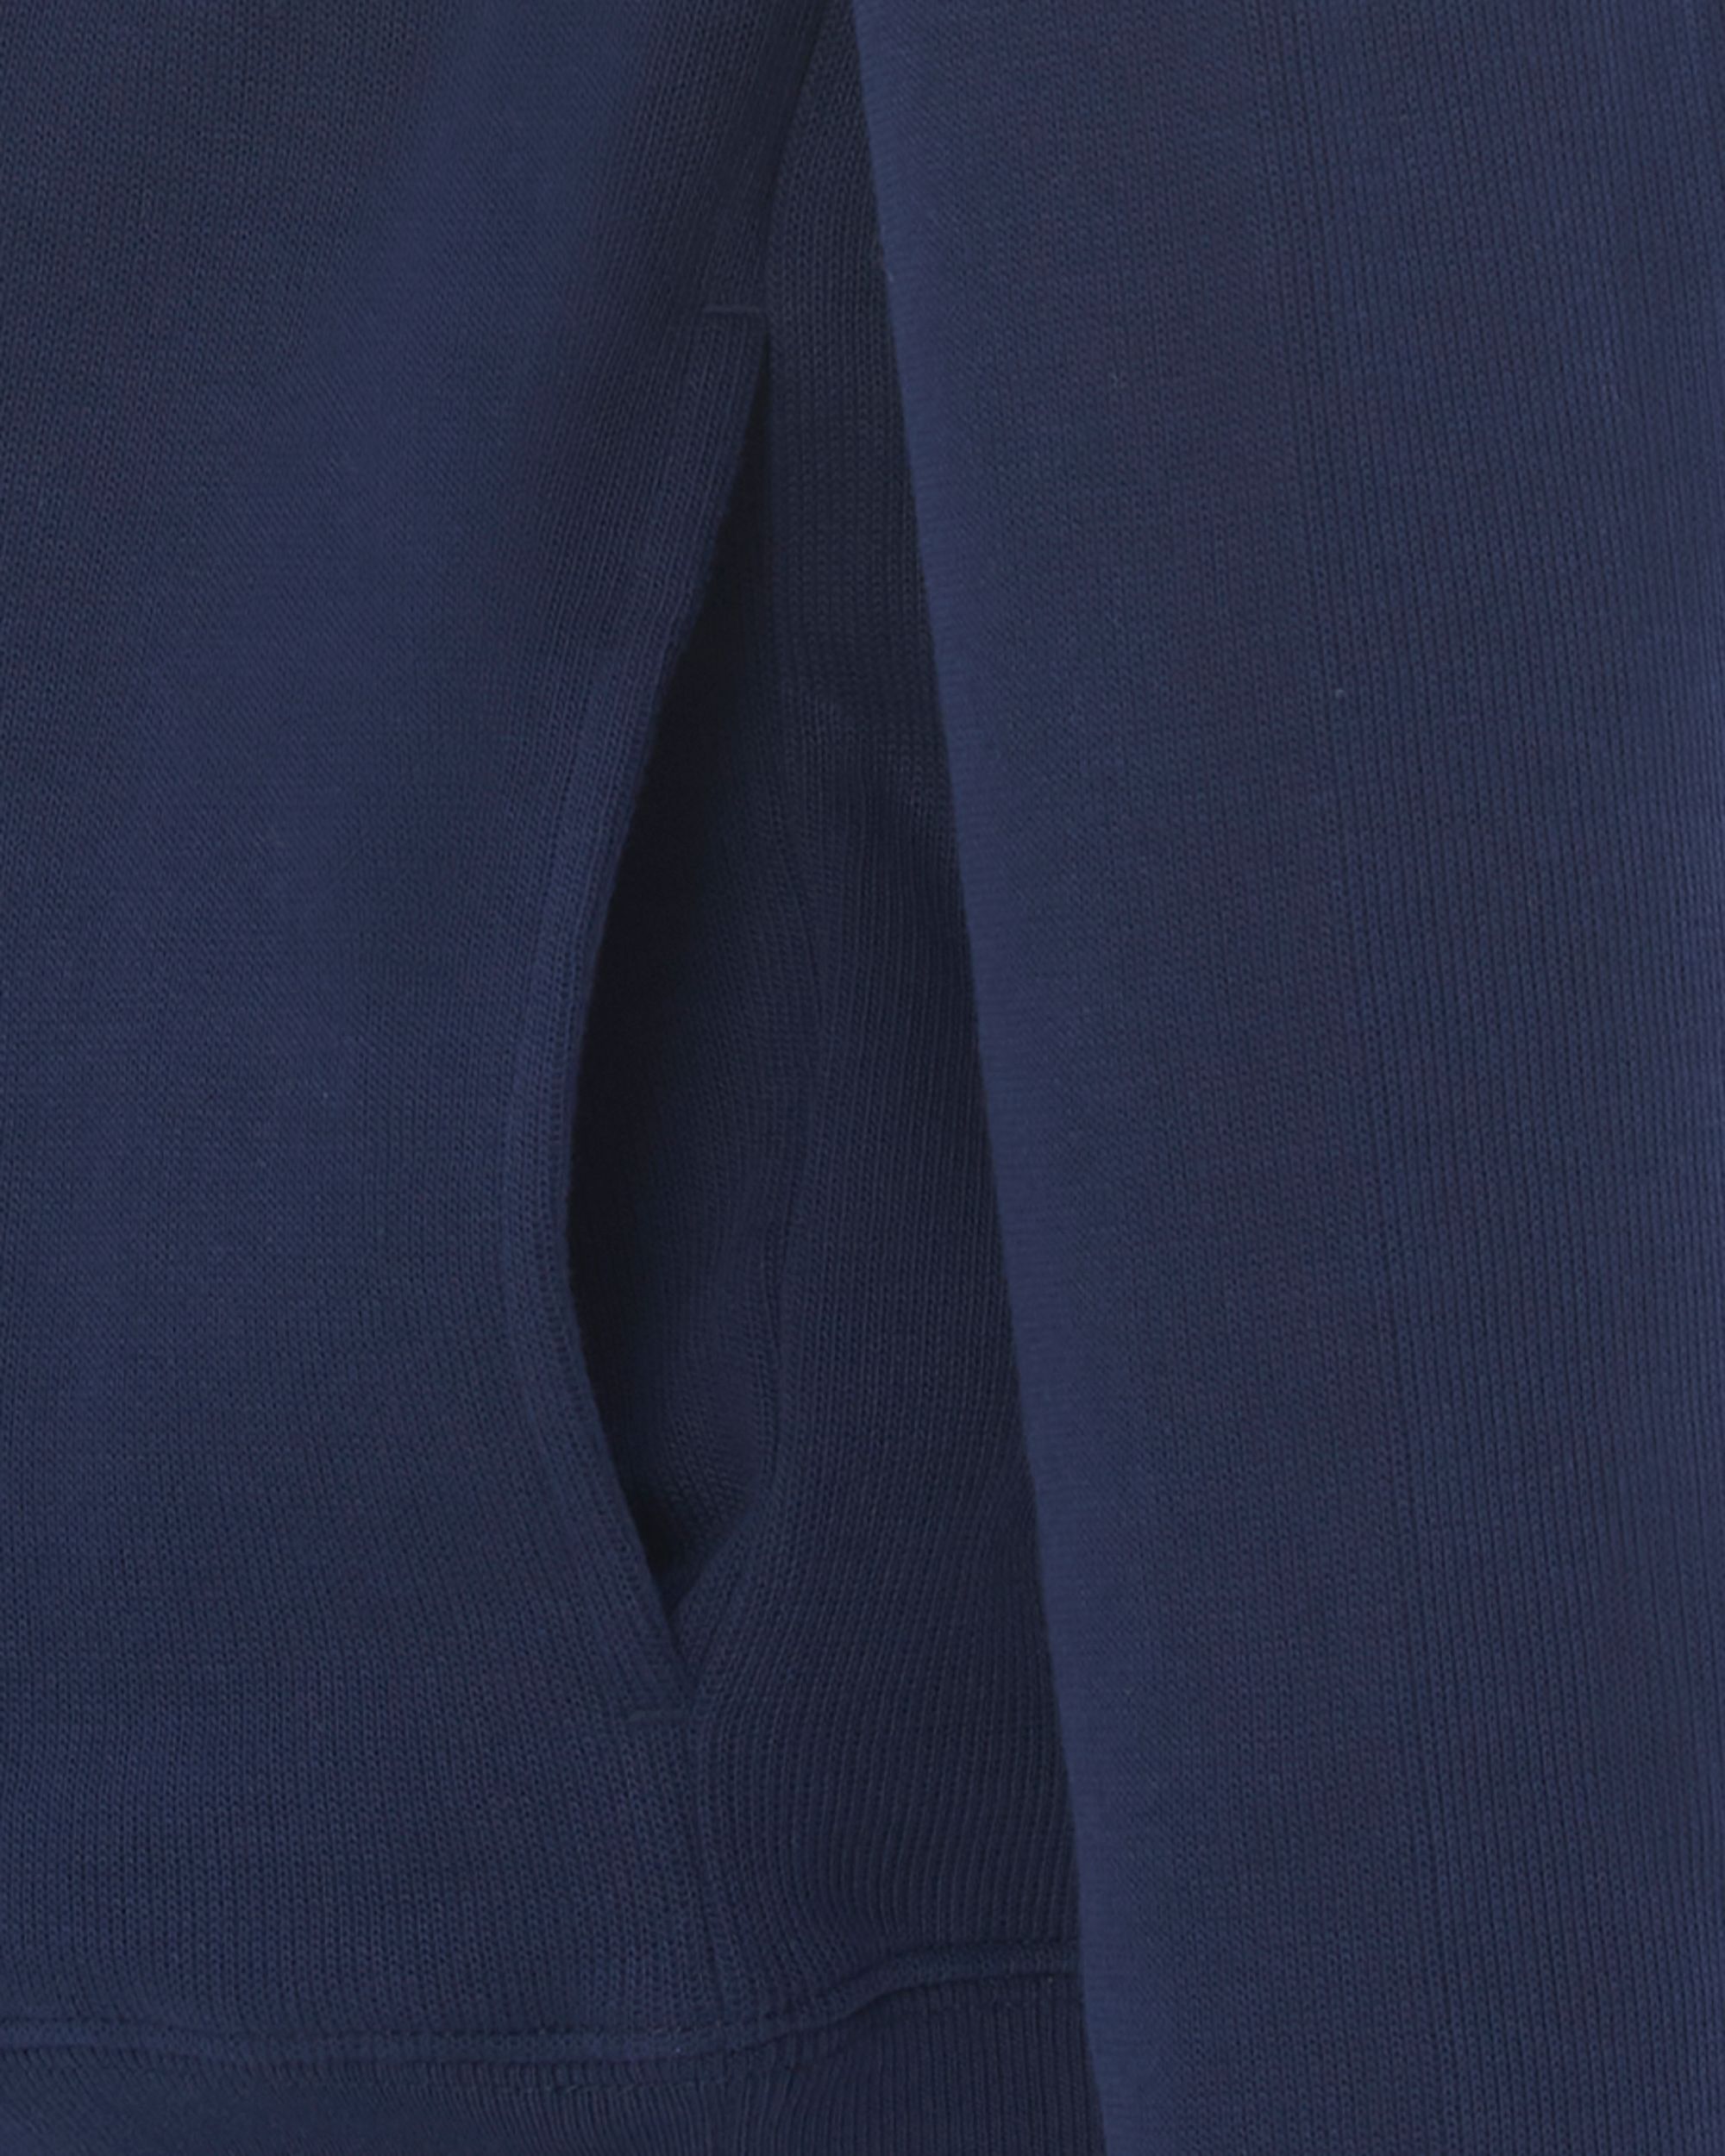 Lacoste Schipperstrui Donker blauw 086728-001-L